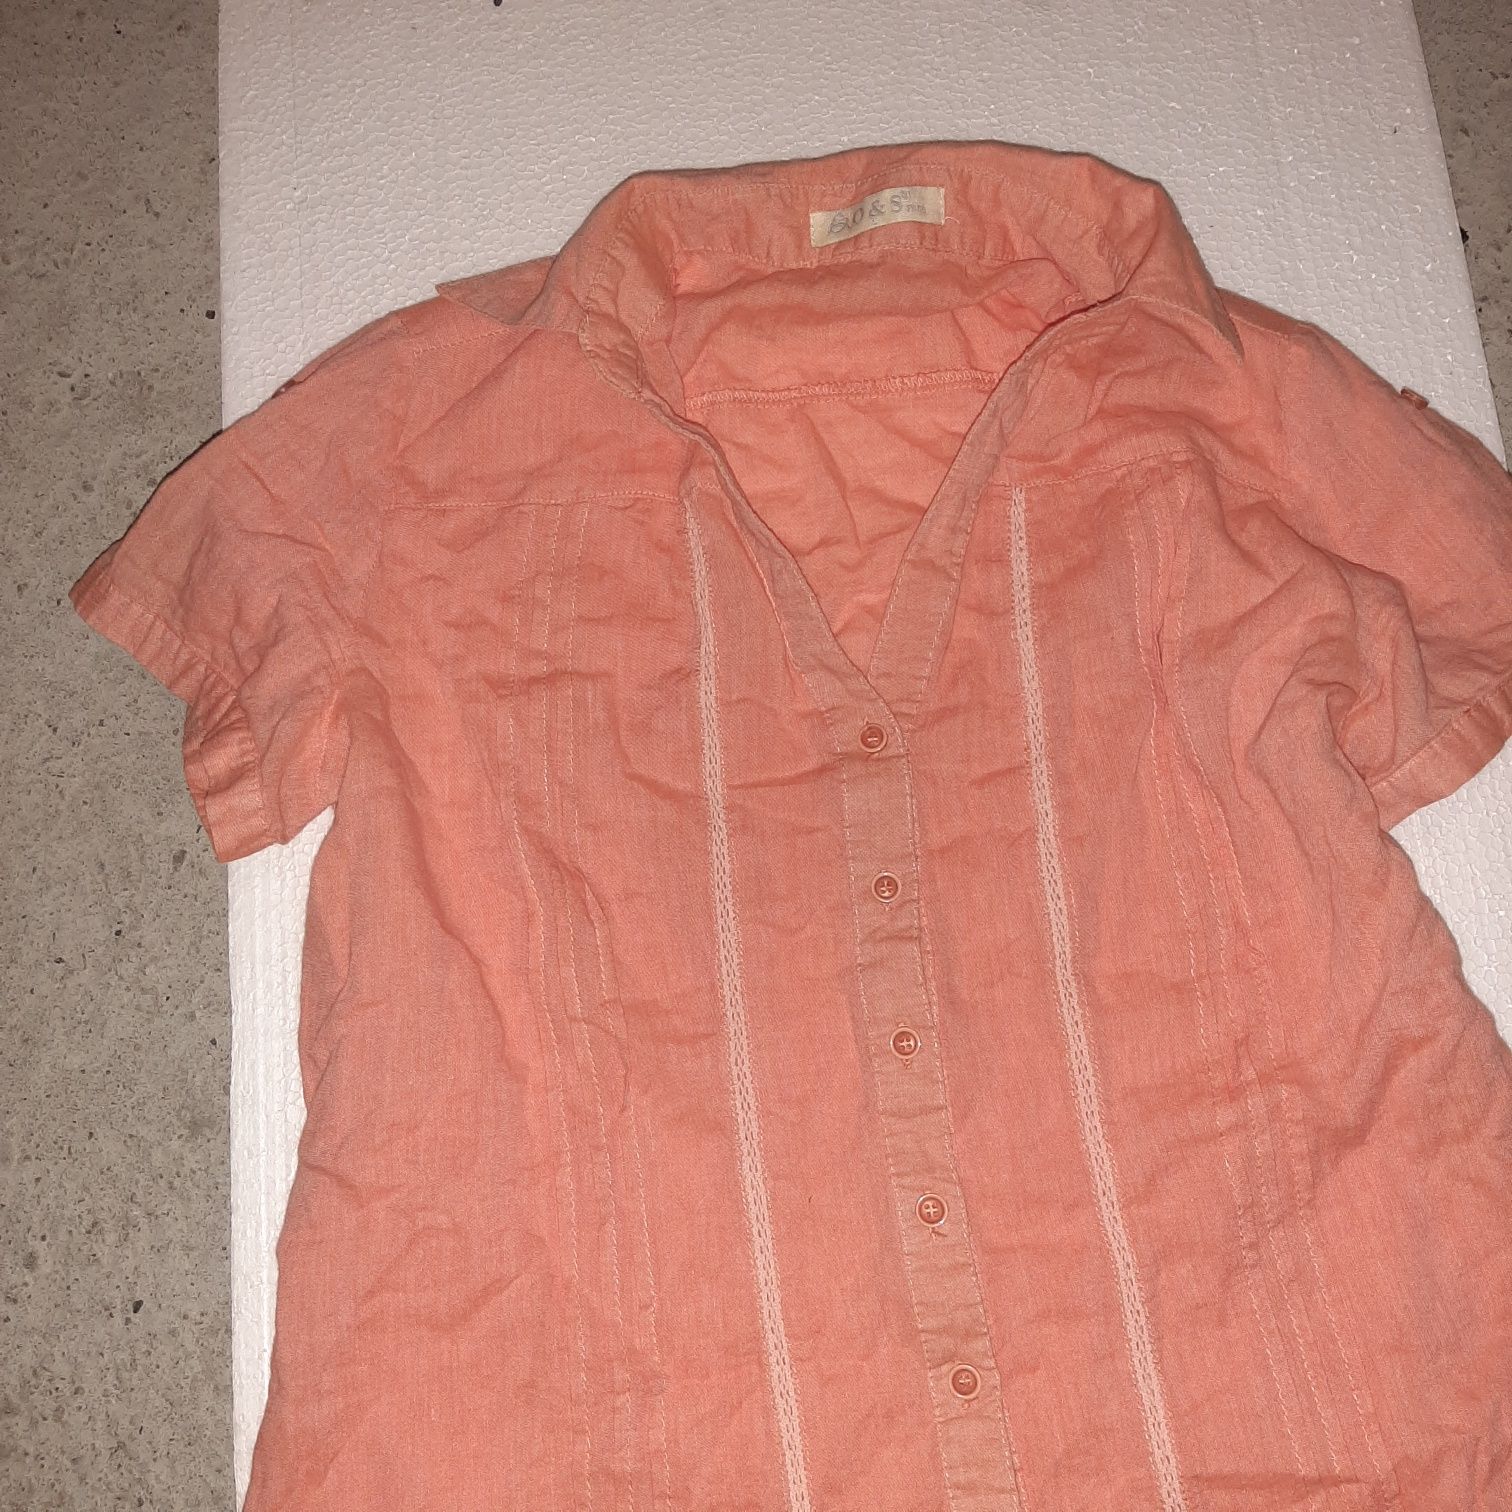 Bluzka r. M/L pomarańczowa koszula krótki rękaw